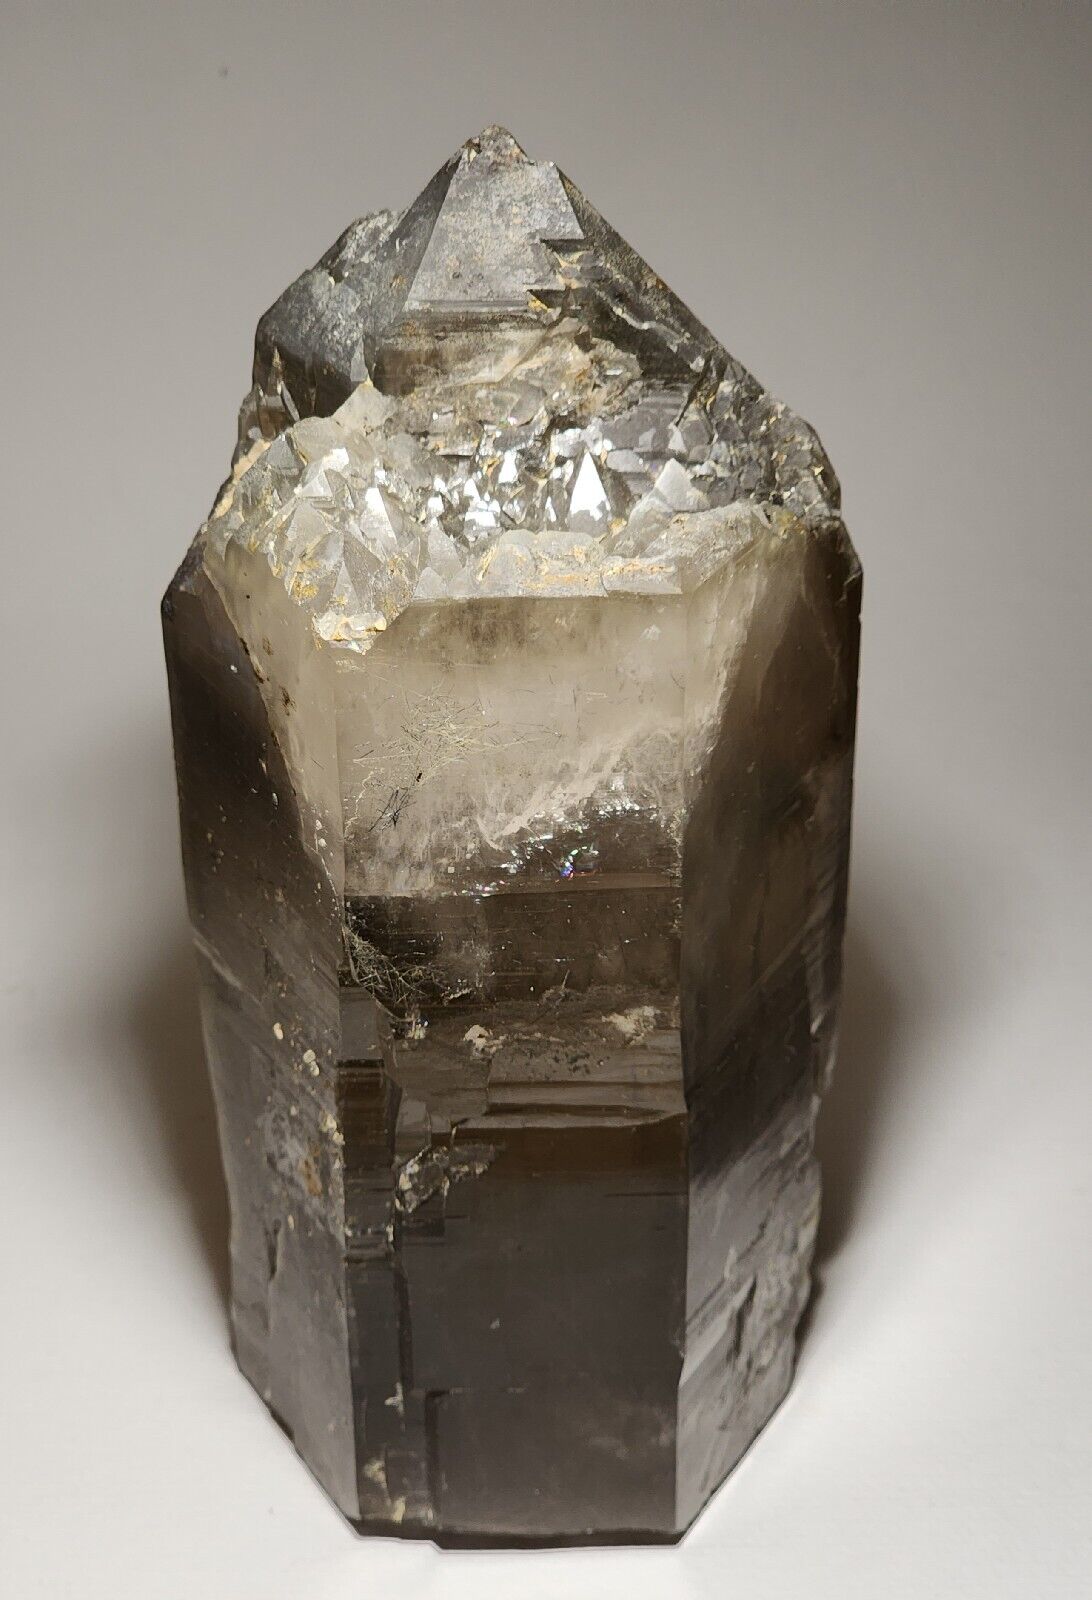 Large Gemmy Smoky Quartz Crystal Mineral Specimen Over 5 Lbs